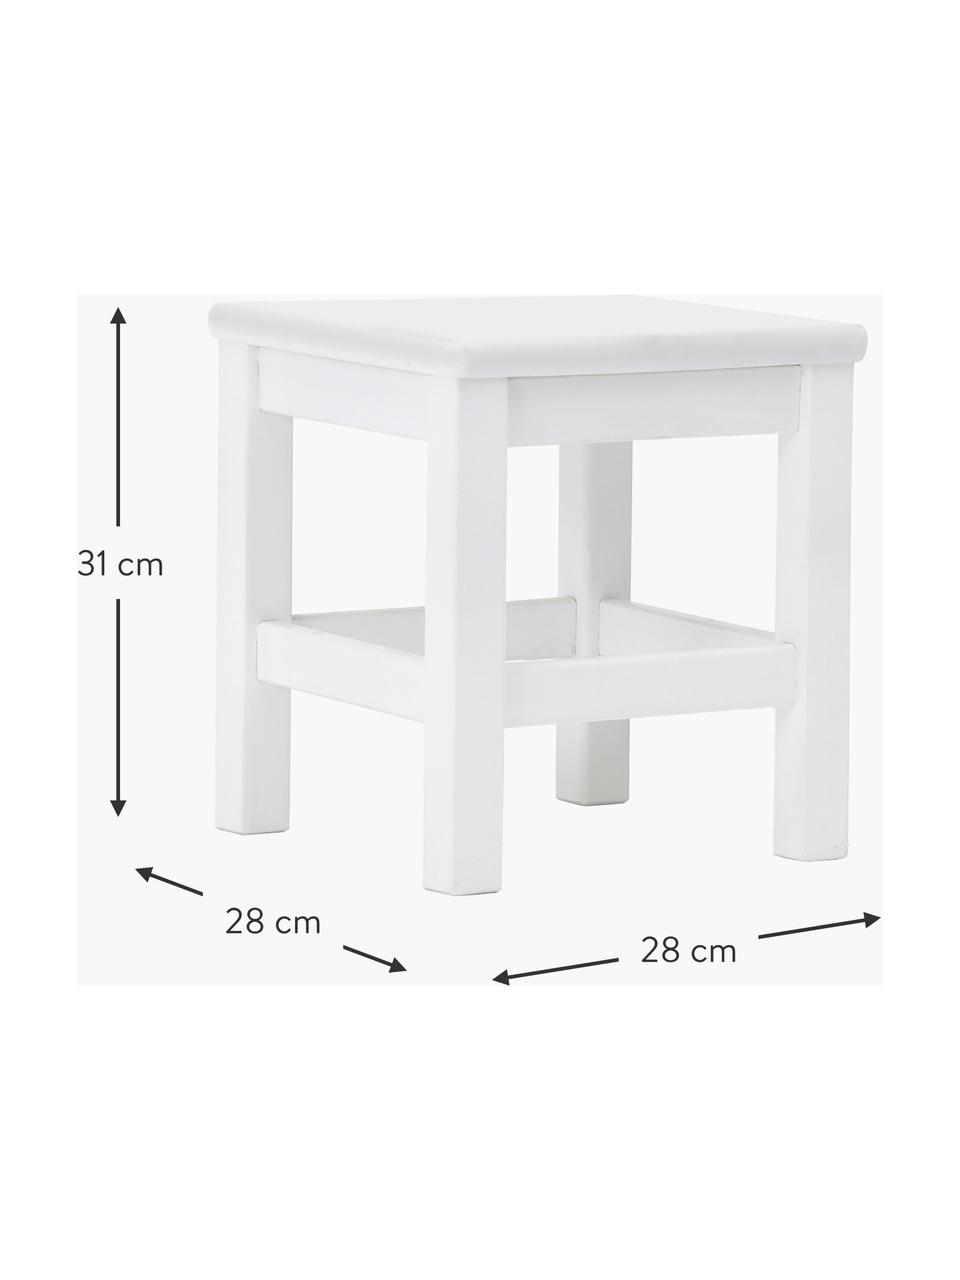 Dětská stolička Marie, MDF deska (dřevovláknitá deska střední hustoty), certifikace FSC, Dřevo, lakováno bílou barvou, Š 28 cm, V 31 cm